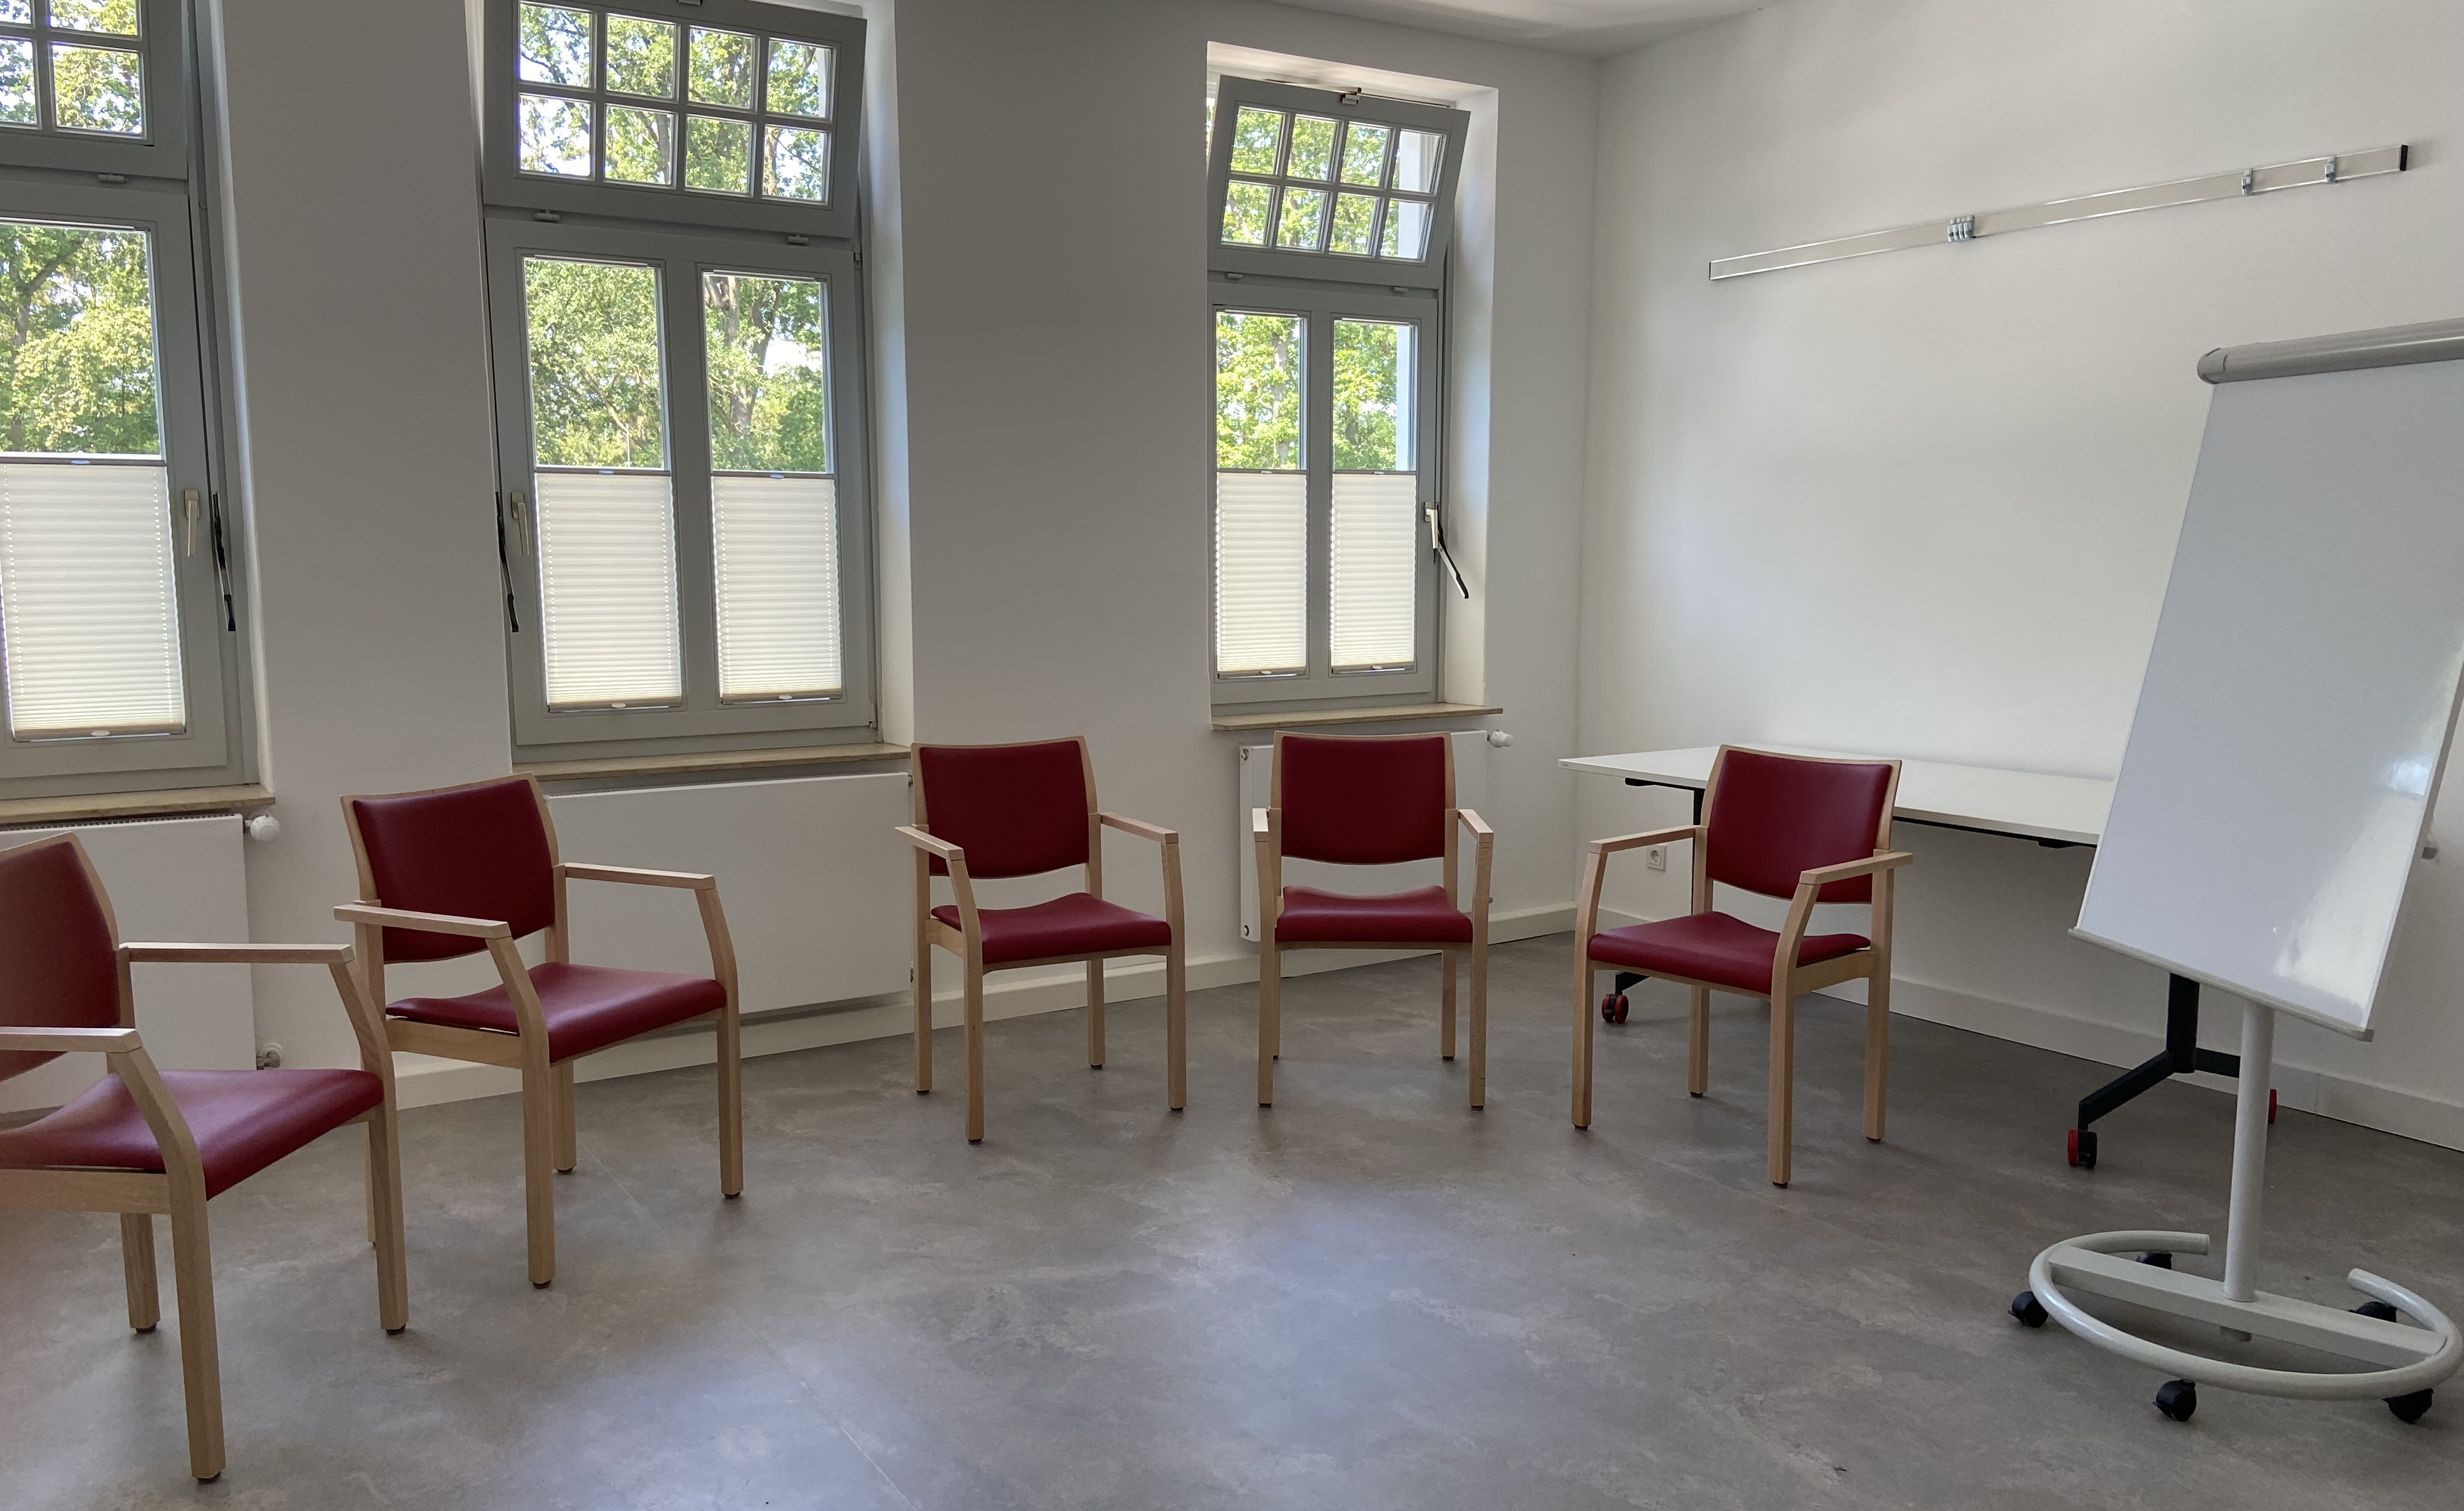 Jede Therapiegruppe hat im sanierten Altbau nun einen eigenen Gruppenraum in der Fachklinik Oldenburger Land. Foto: Kerstin Kempermann